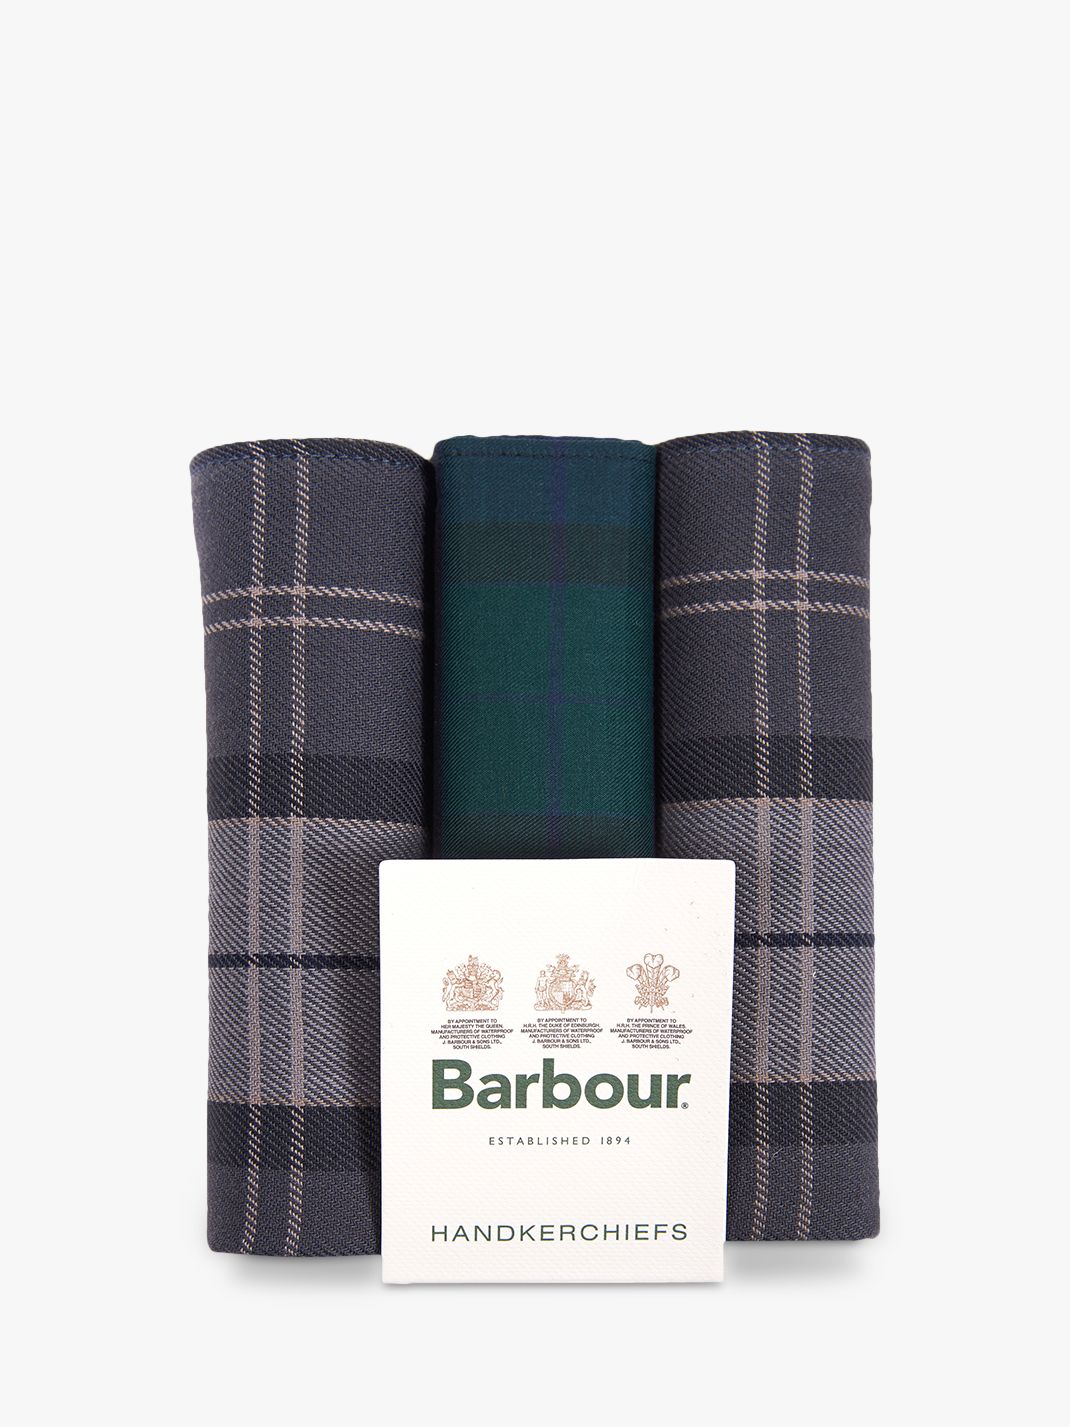 Barbour Black Watch Tartan Handkerchiefs, Pack of 3, Grey/Green at John ...